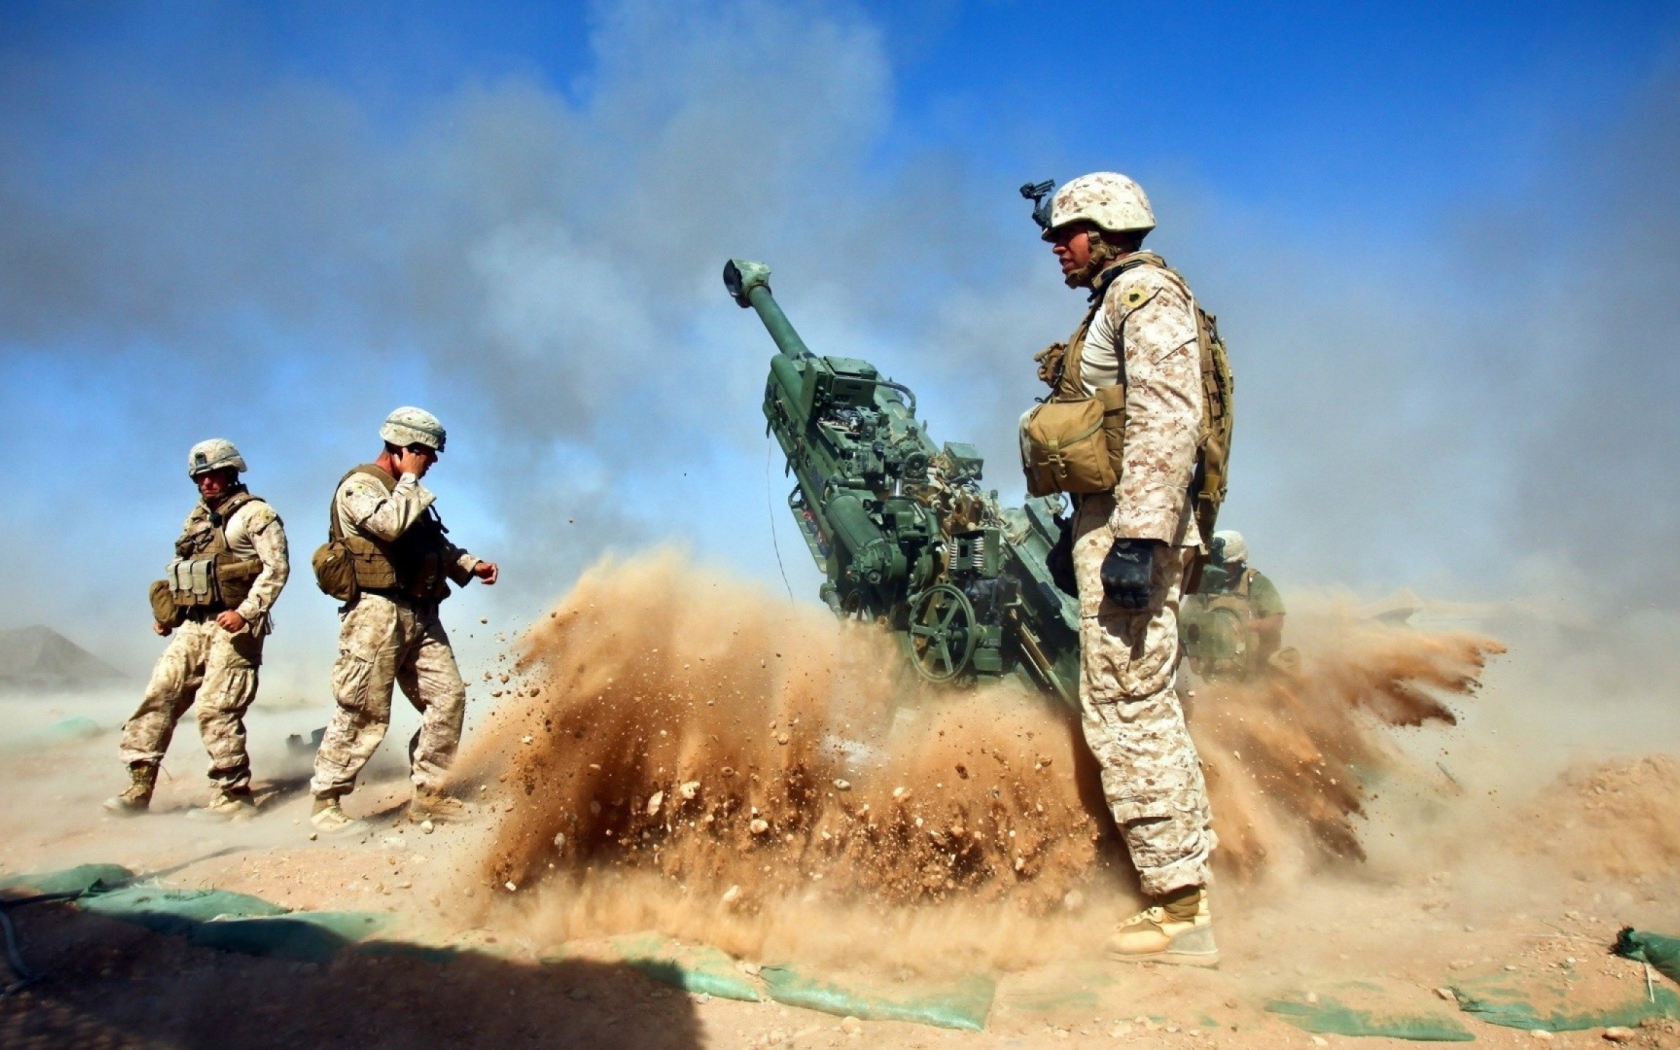 Работа артиллерии в пустыне